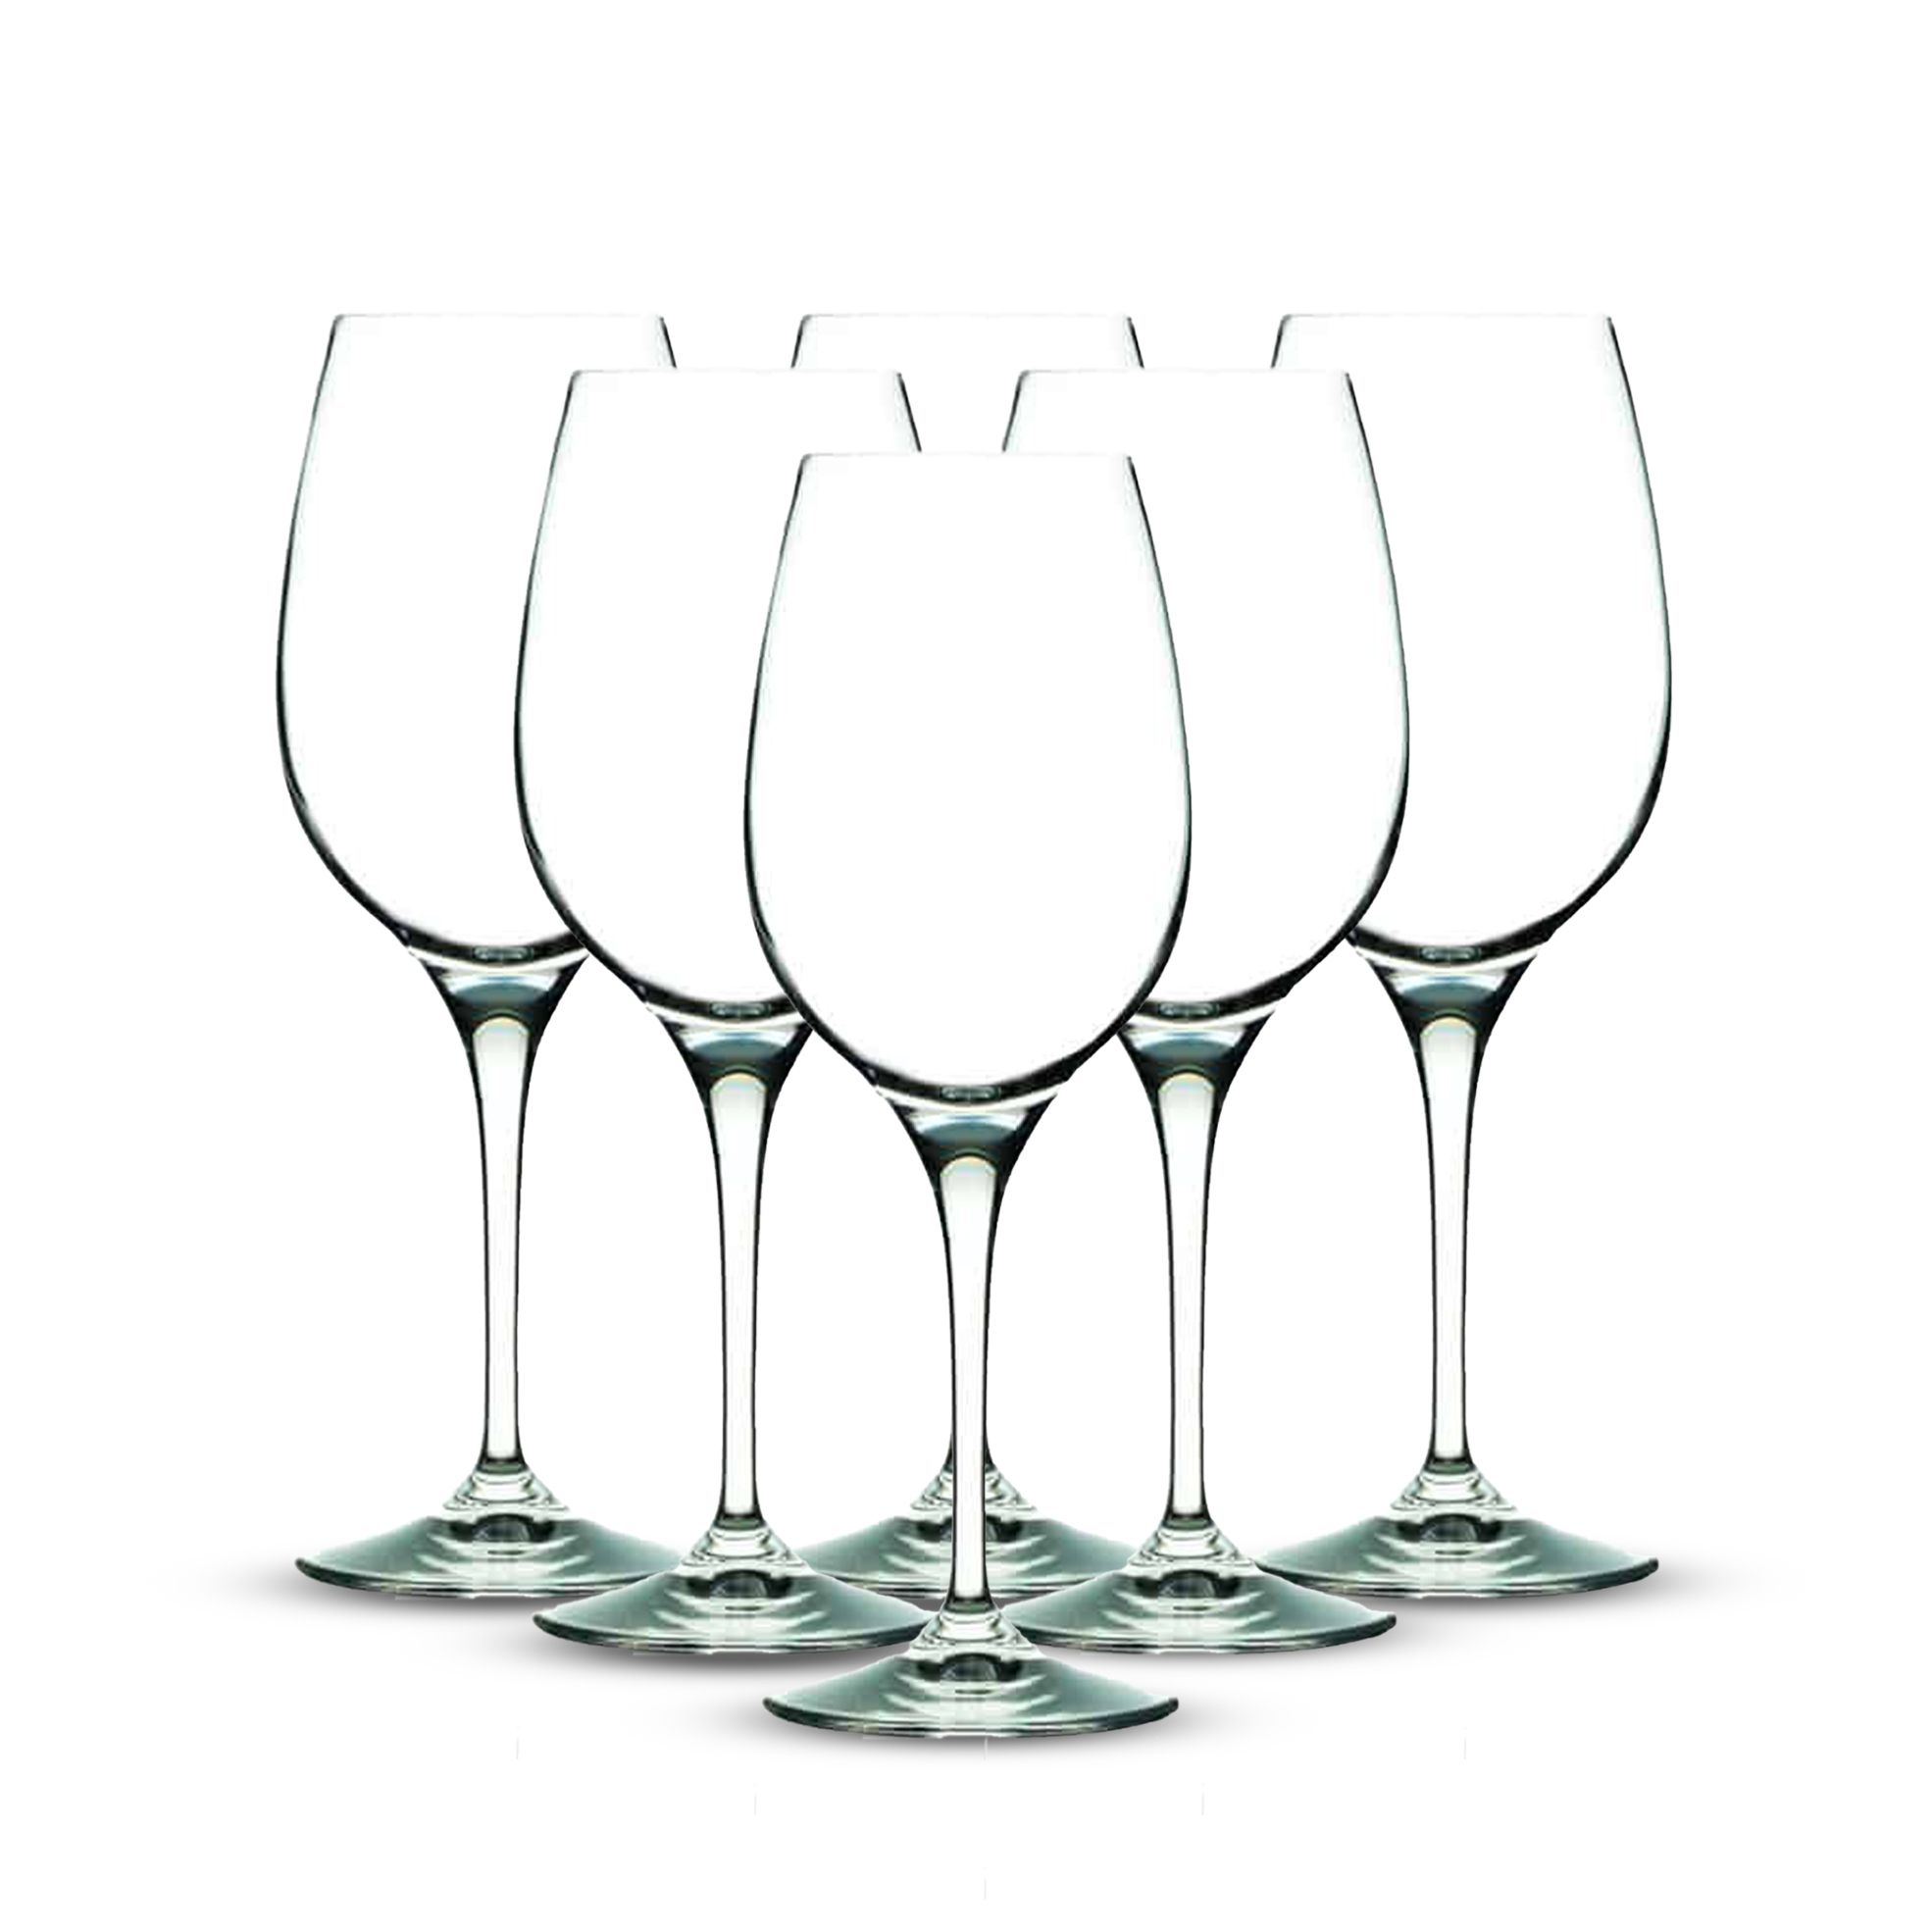 RCR  Invino Wine Glass - I66